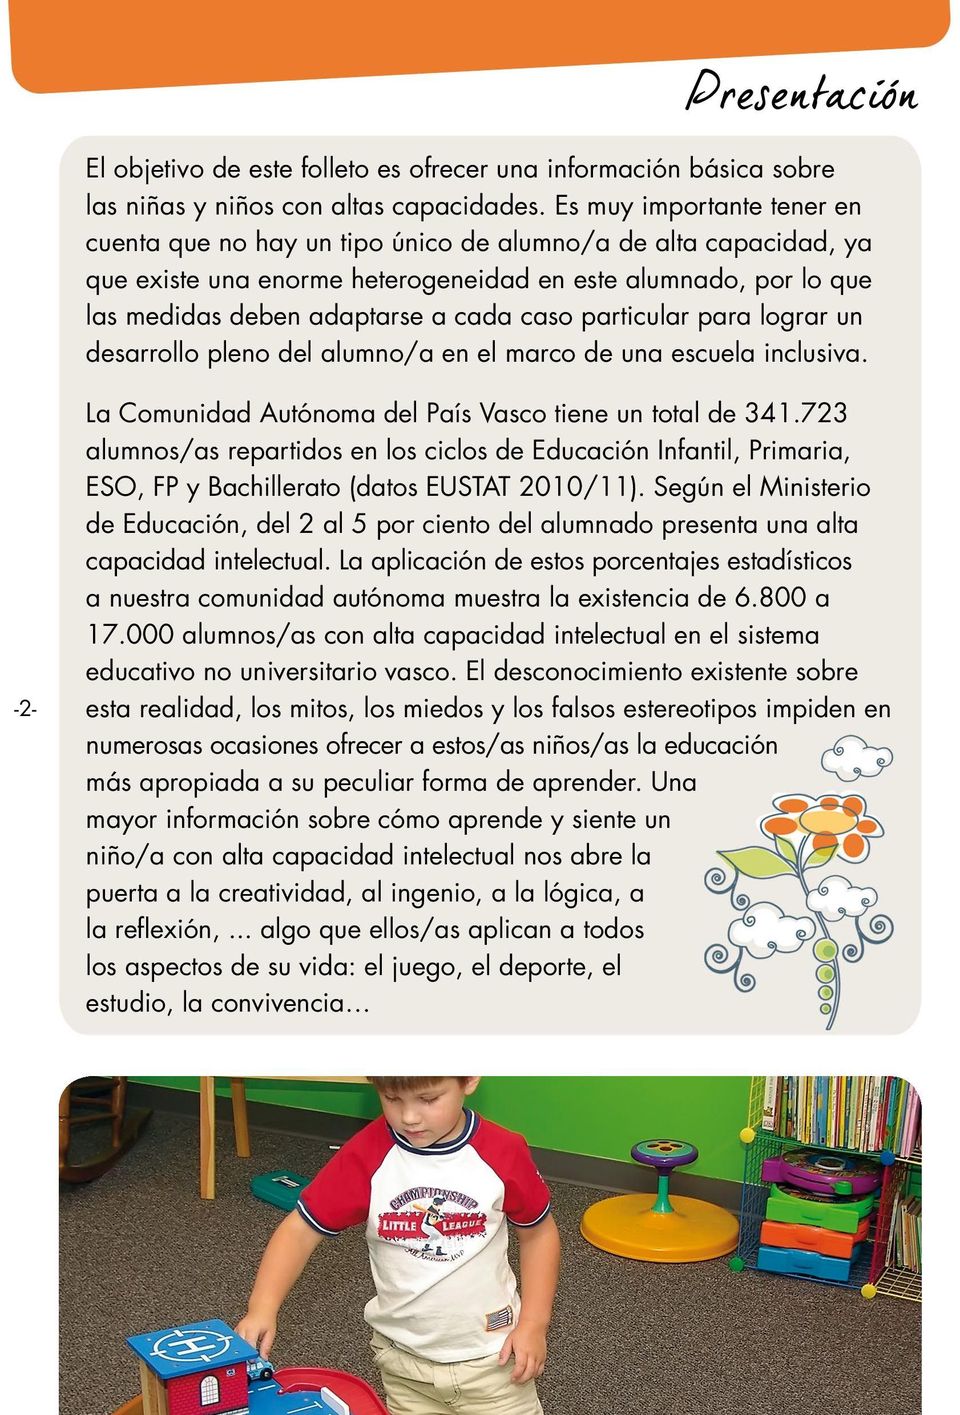 particular para lograr un desarrollo pleno del alumno/a en el marco de una escuela inclusiva. -2- La Comunidad Autónoma del País Vasco tiene un total de 341.